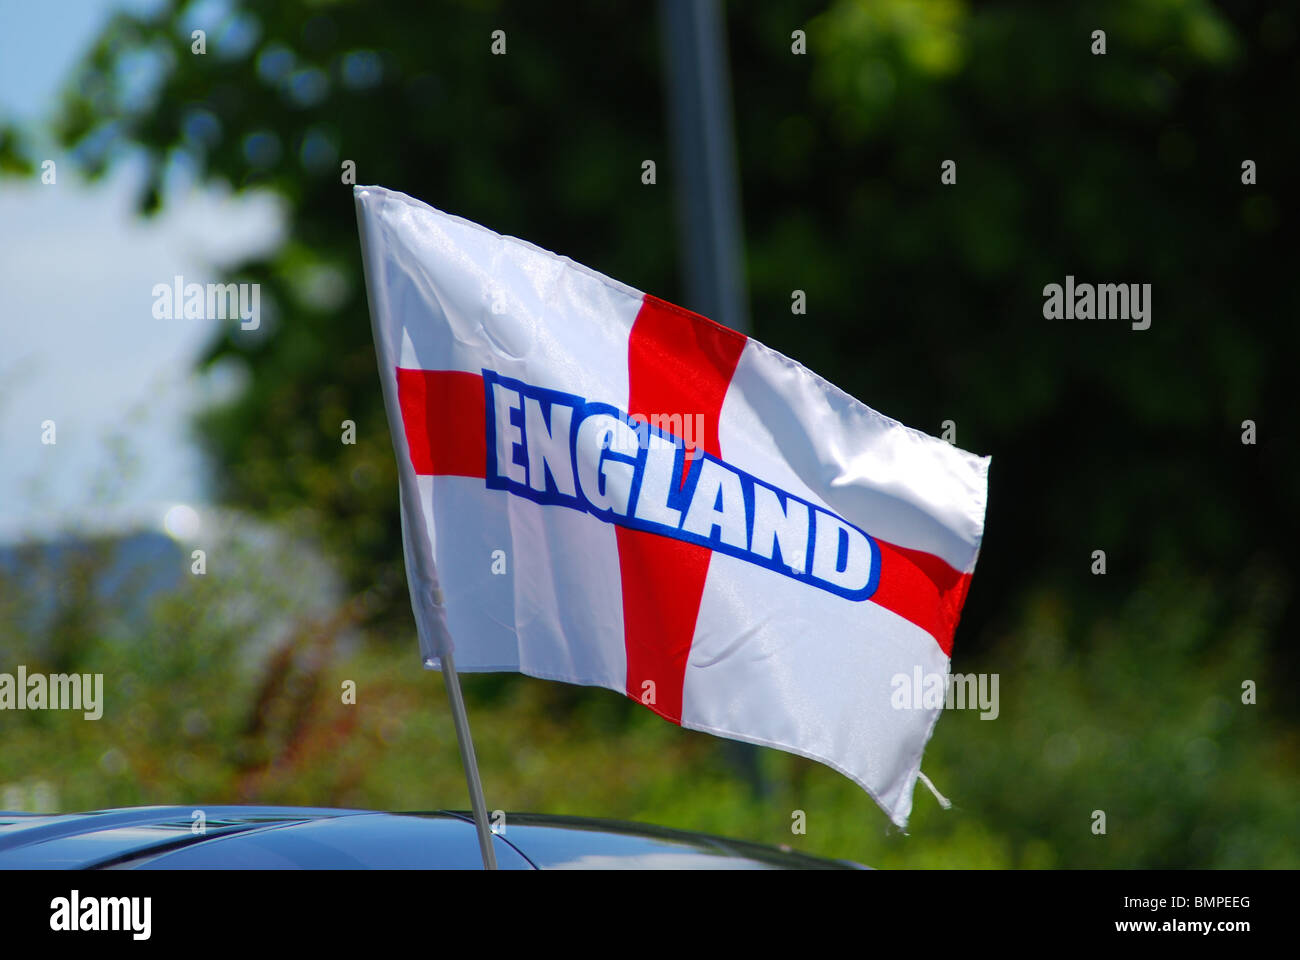 England National Football Flag on a car. Stock Photo